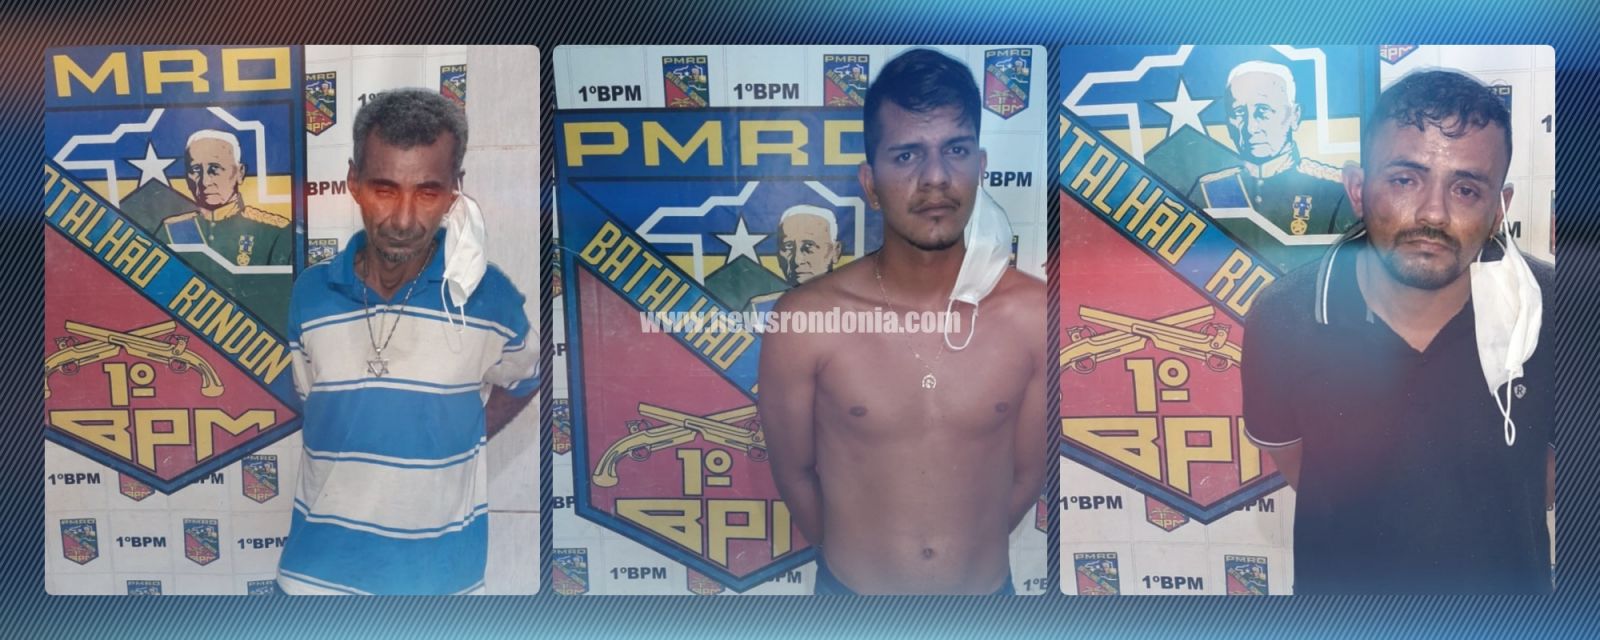 Polícia prende trio com drogas, dinheiro e vários objetos roubados - News Rondônia